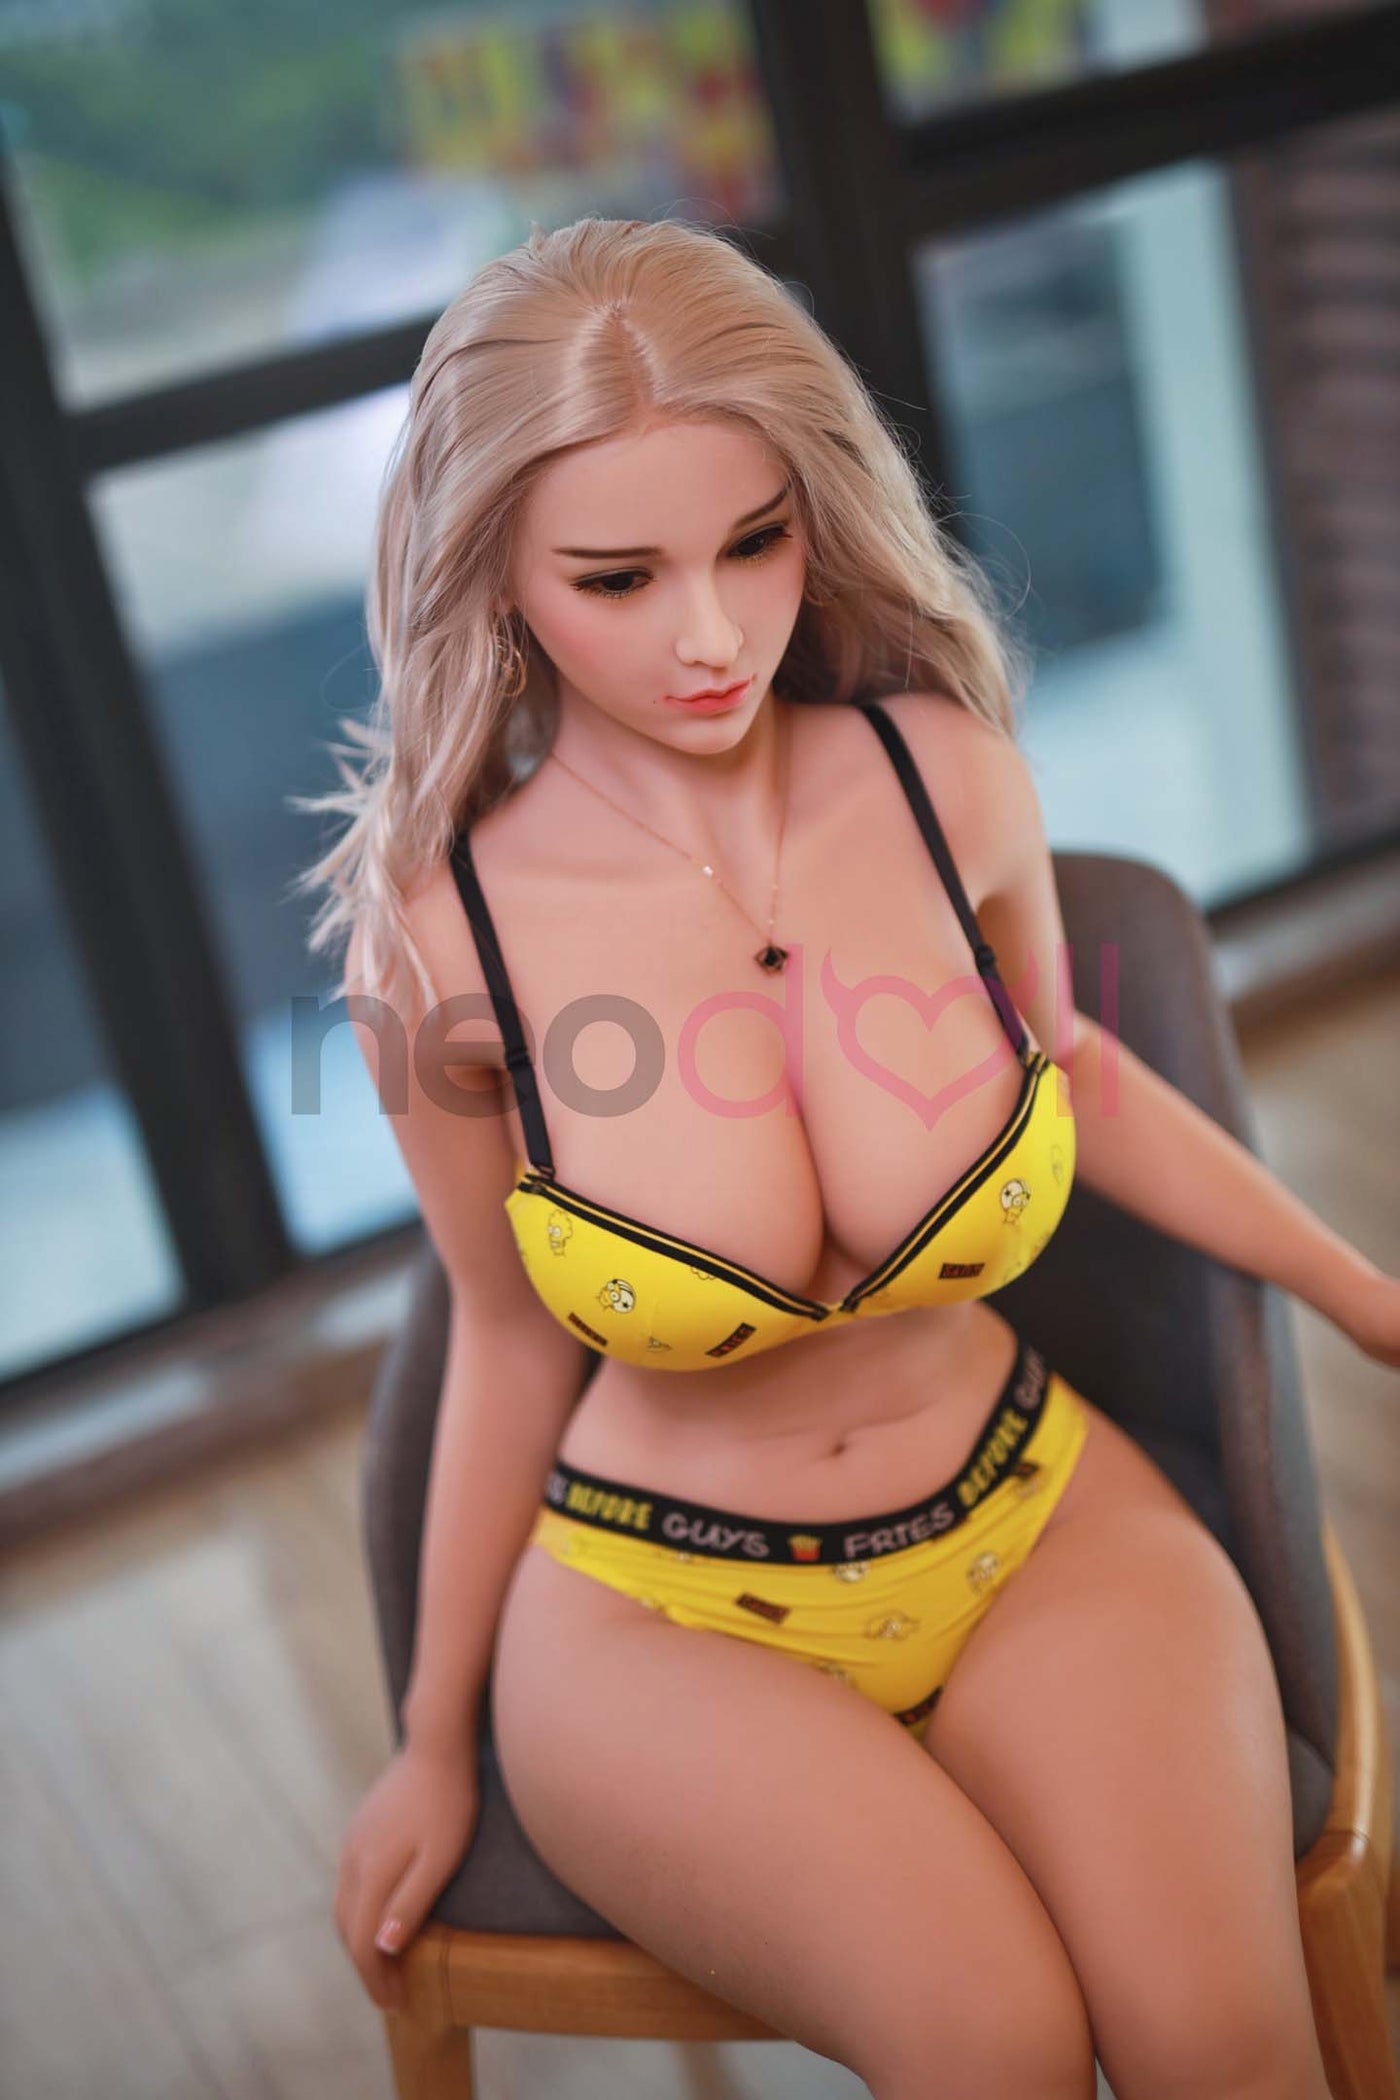 Neodoll Sugar Babe - Lilian - Realistic Sex Doll - Gel Breast - Uterus - 157cm - Wheat